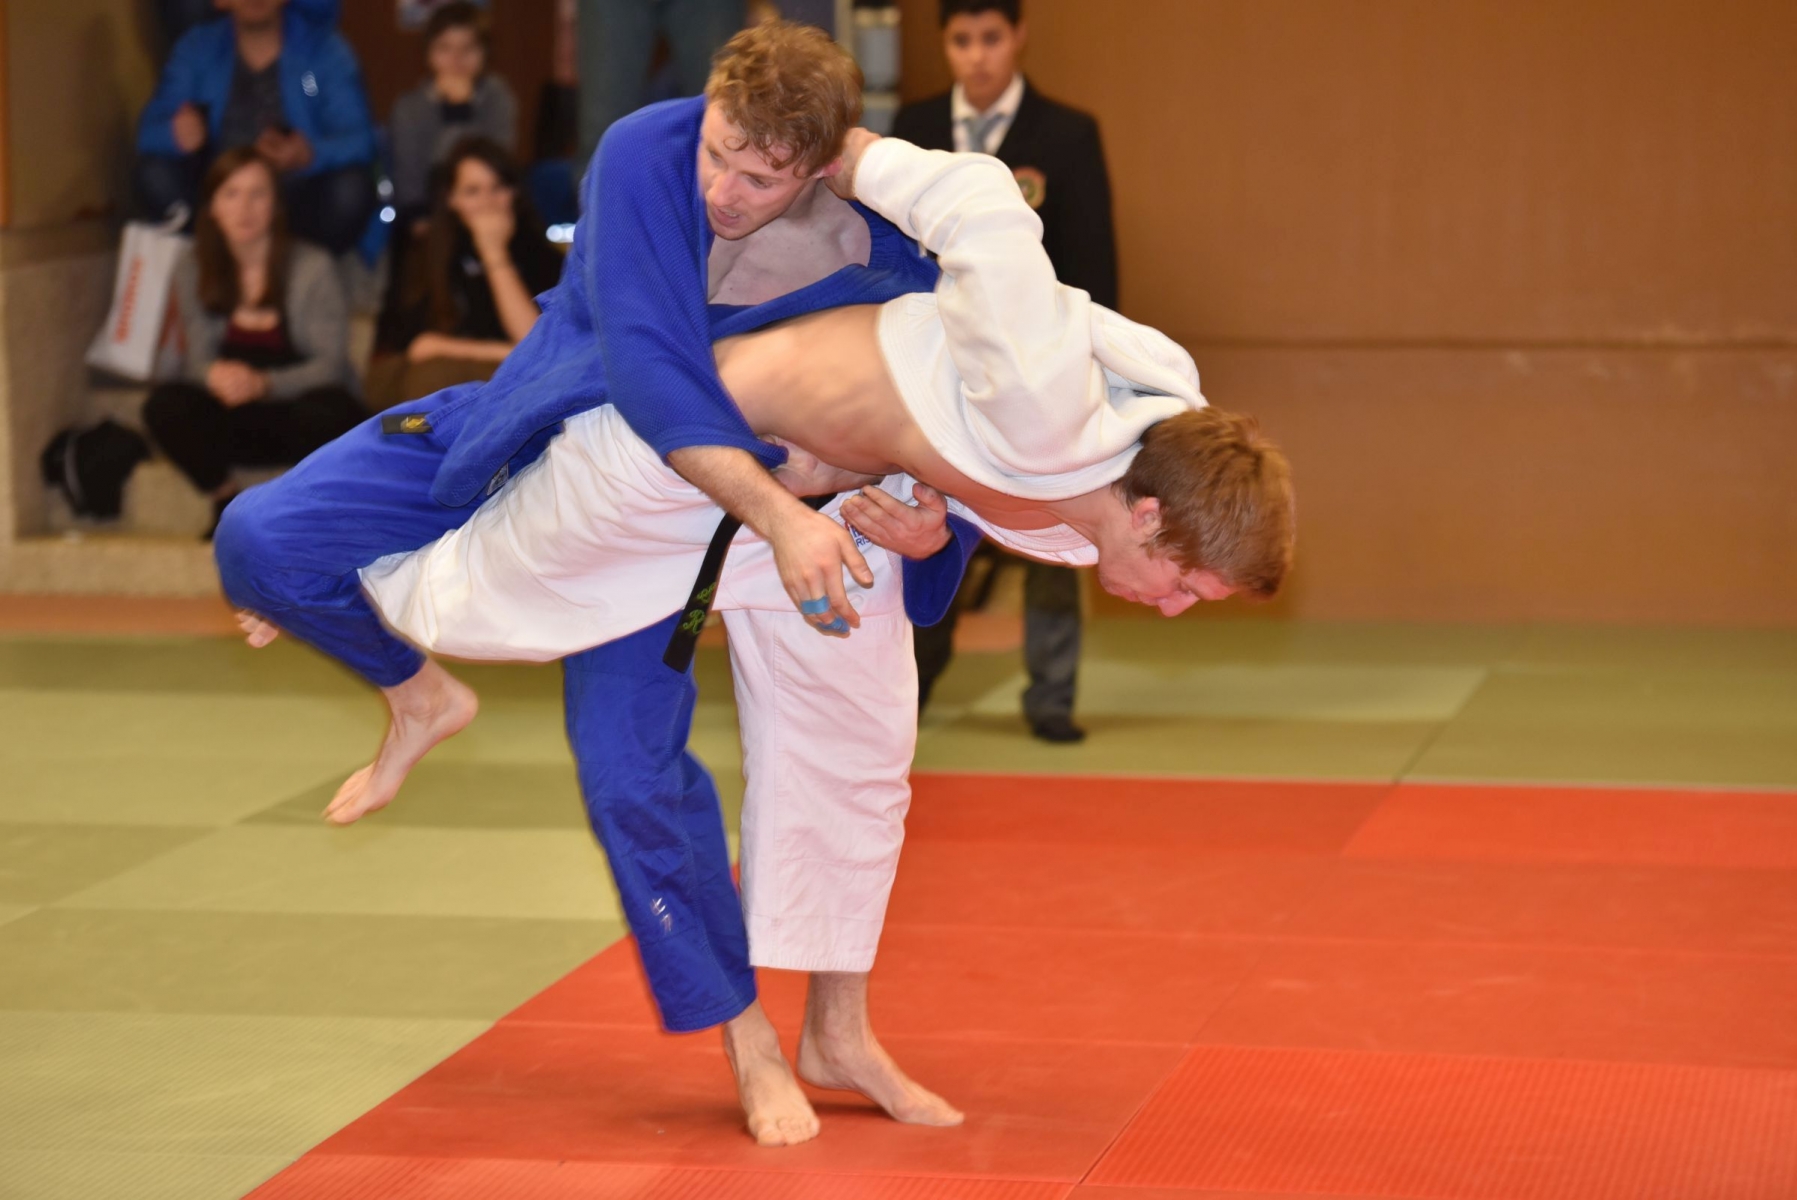 Judo tournoi Morges en blanc contre Berne en bleu a Beausobre ici Rosset de Morges le 12.3.2016 ? photo Michel Perret